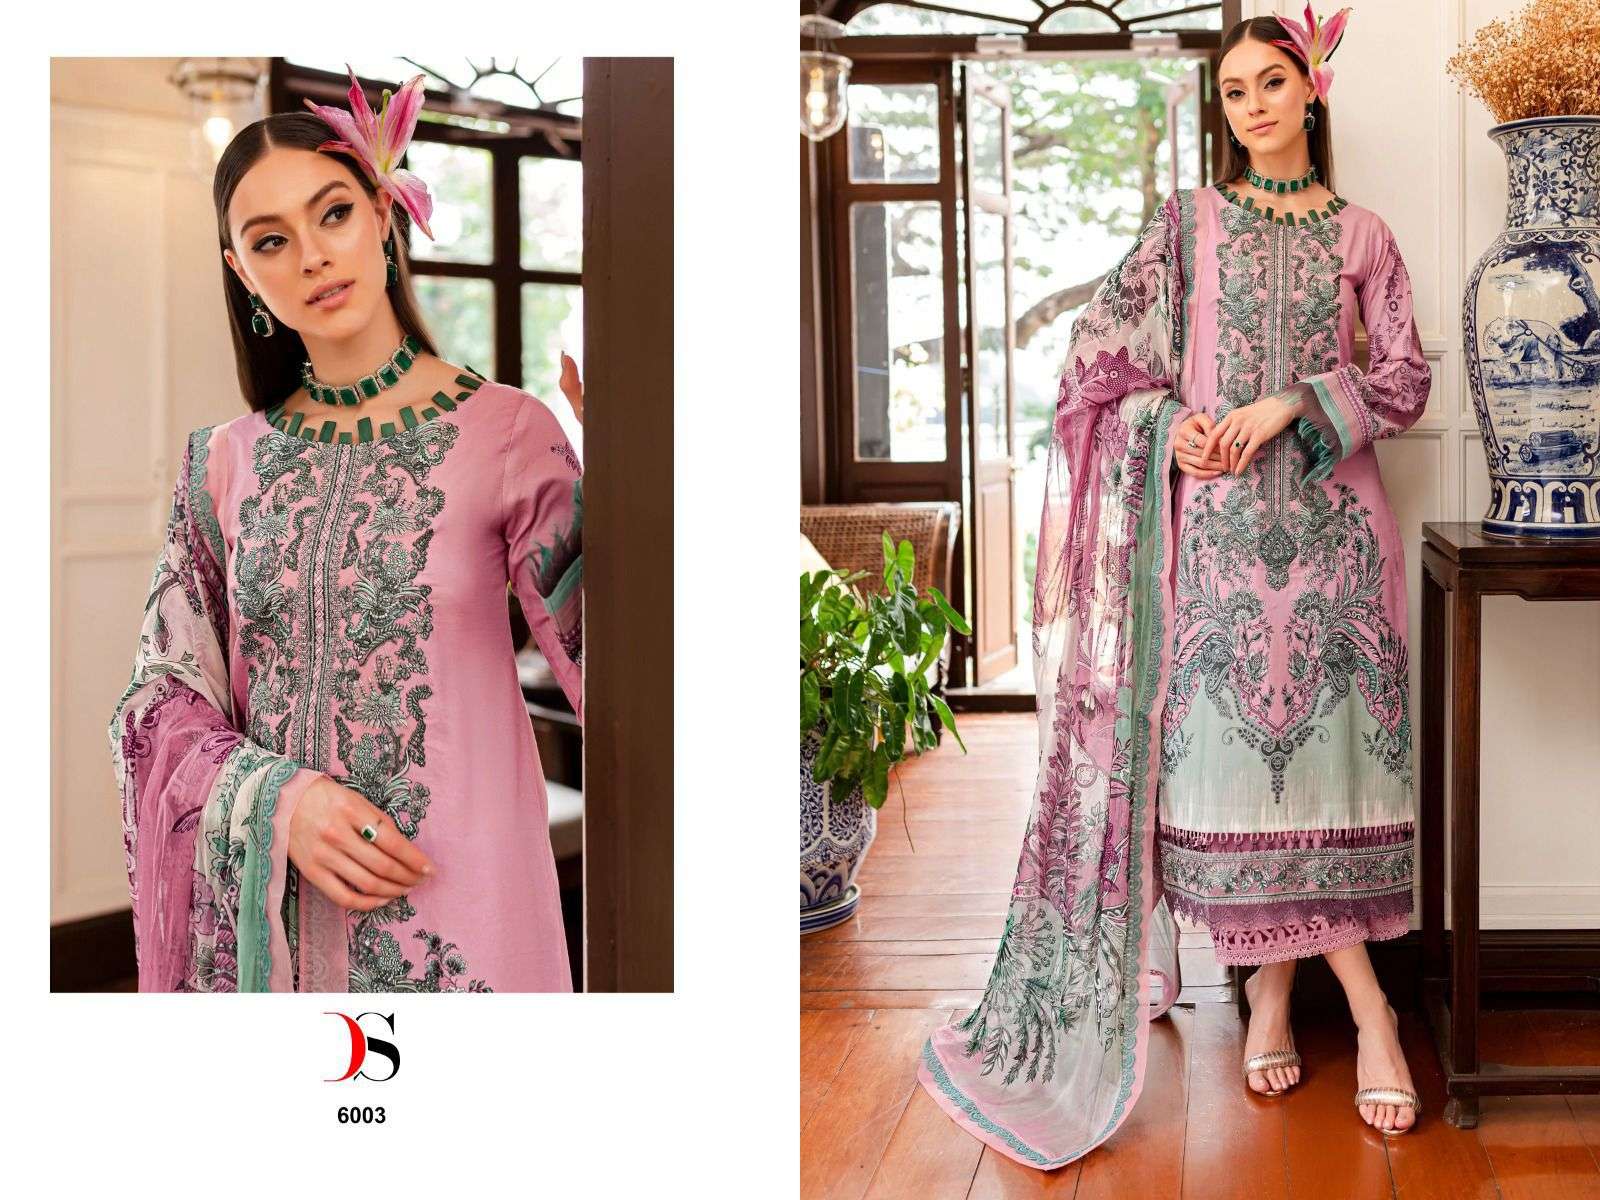 Deepsy Firdous Queens Court 6 Nx Cotton Dupatta Pakistani Suits Wholesale catalog